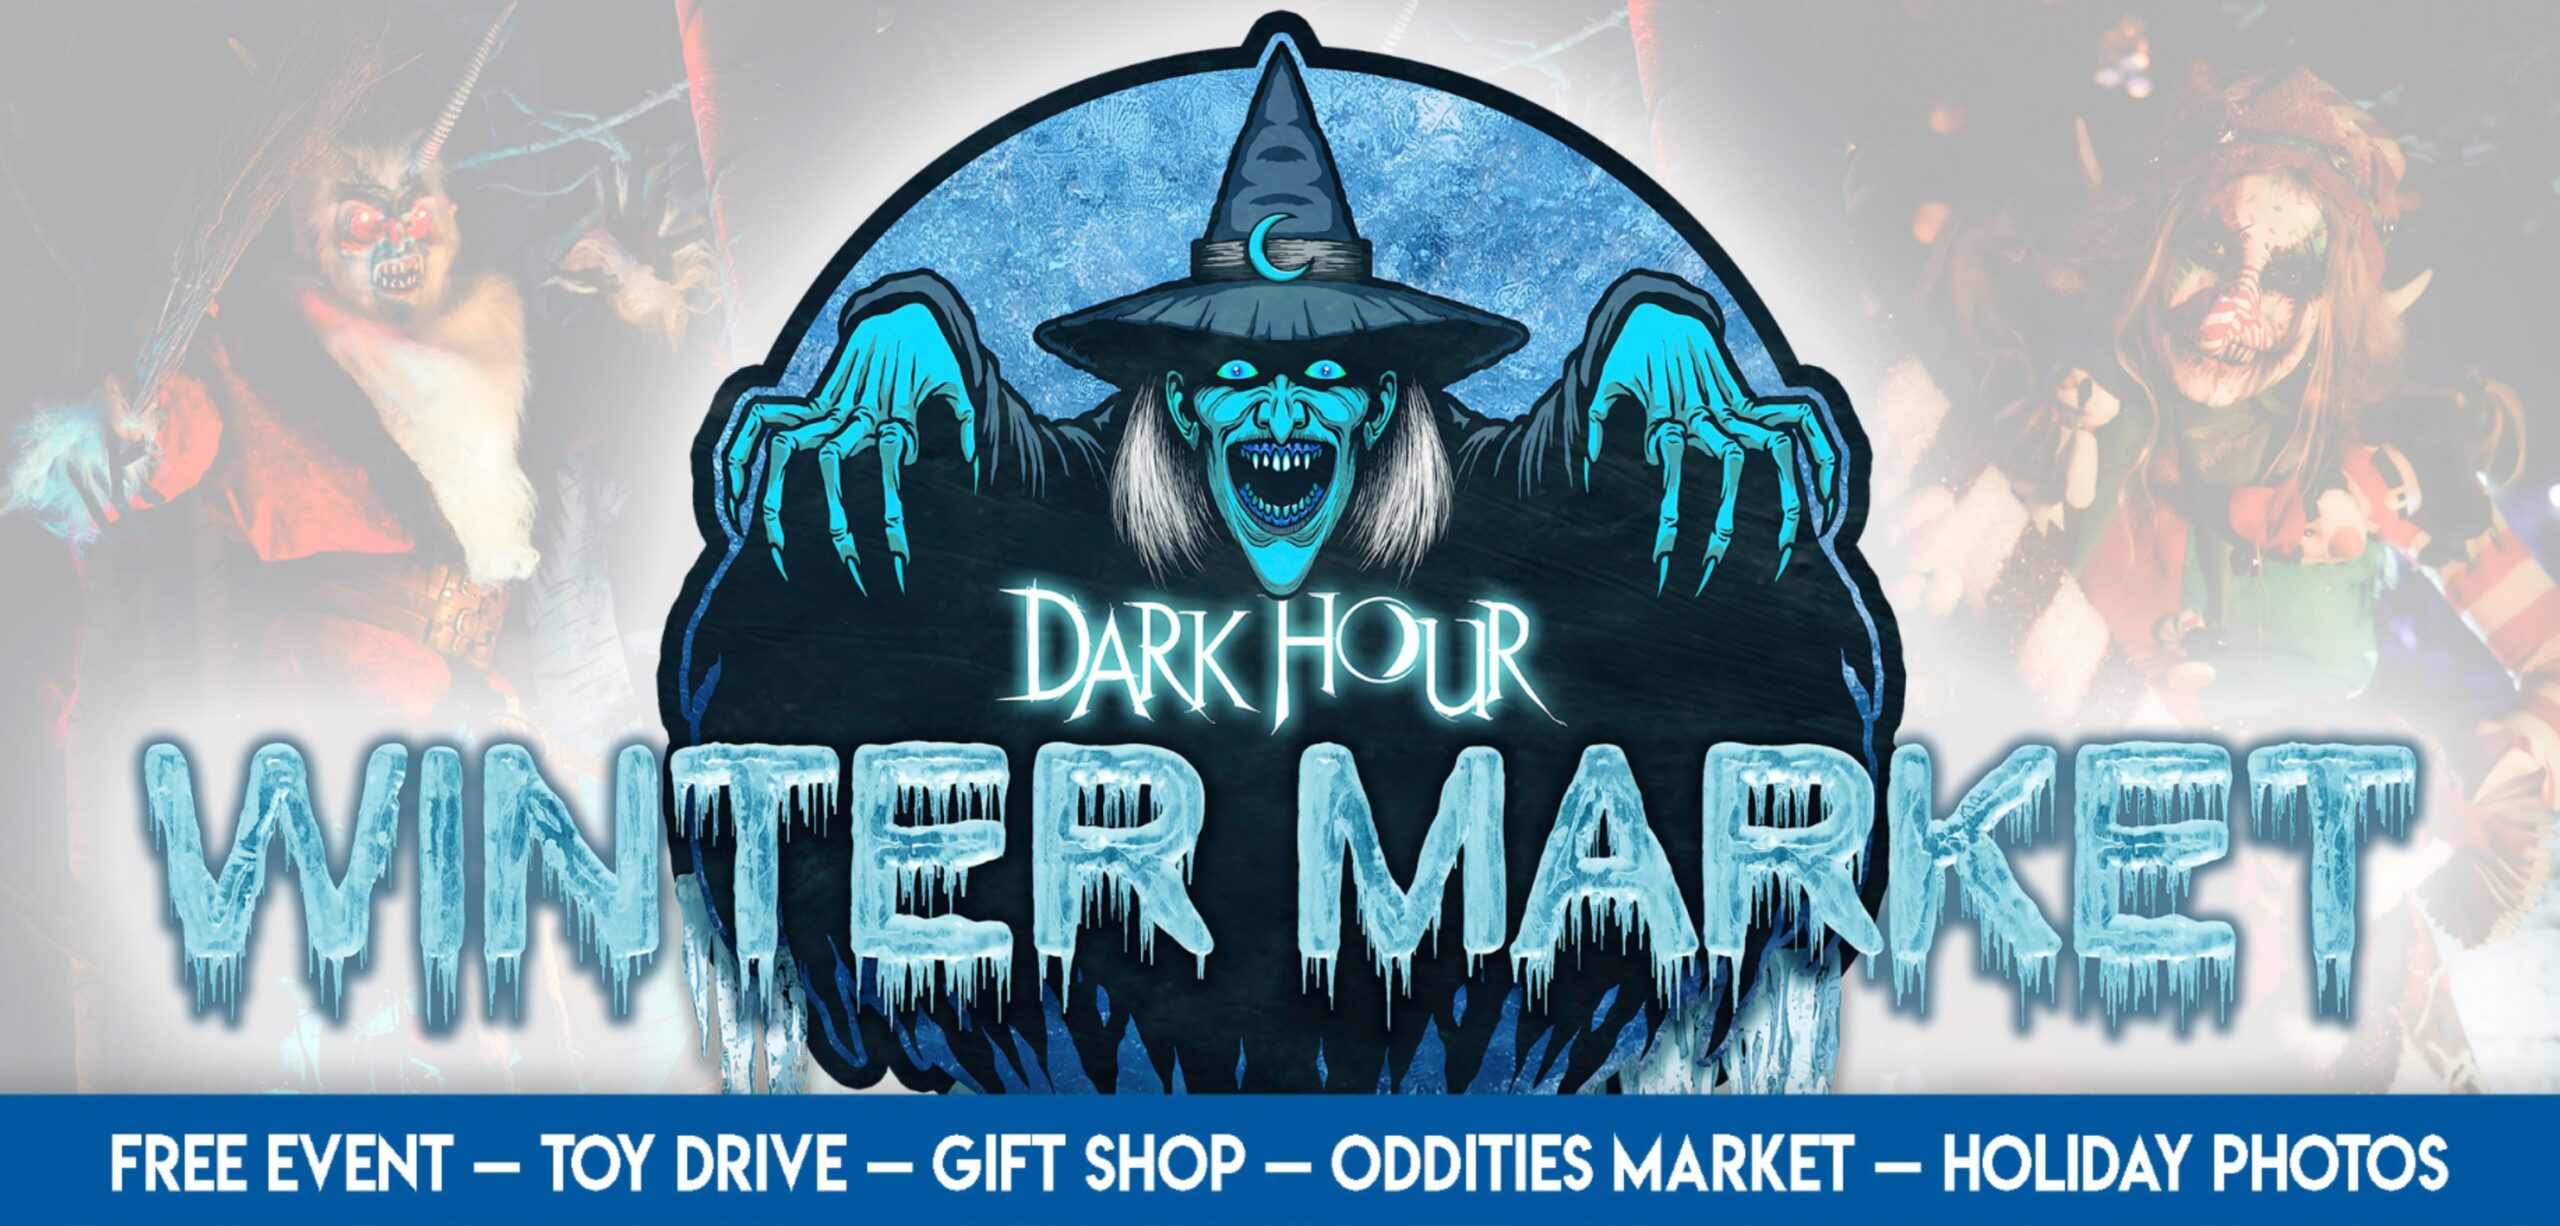 Dark Hour Winter Market